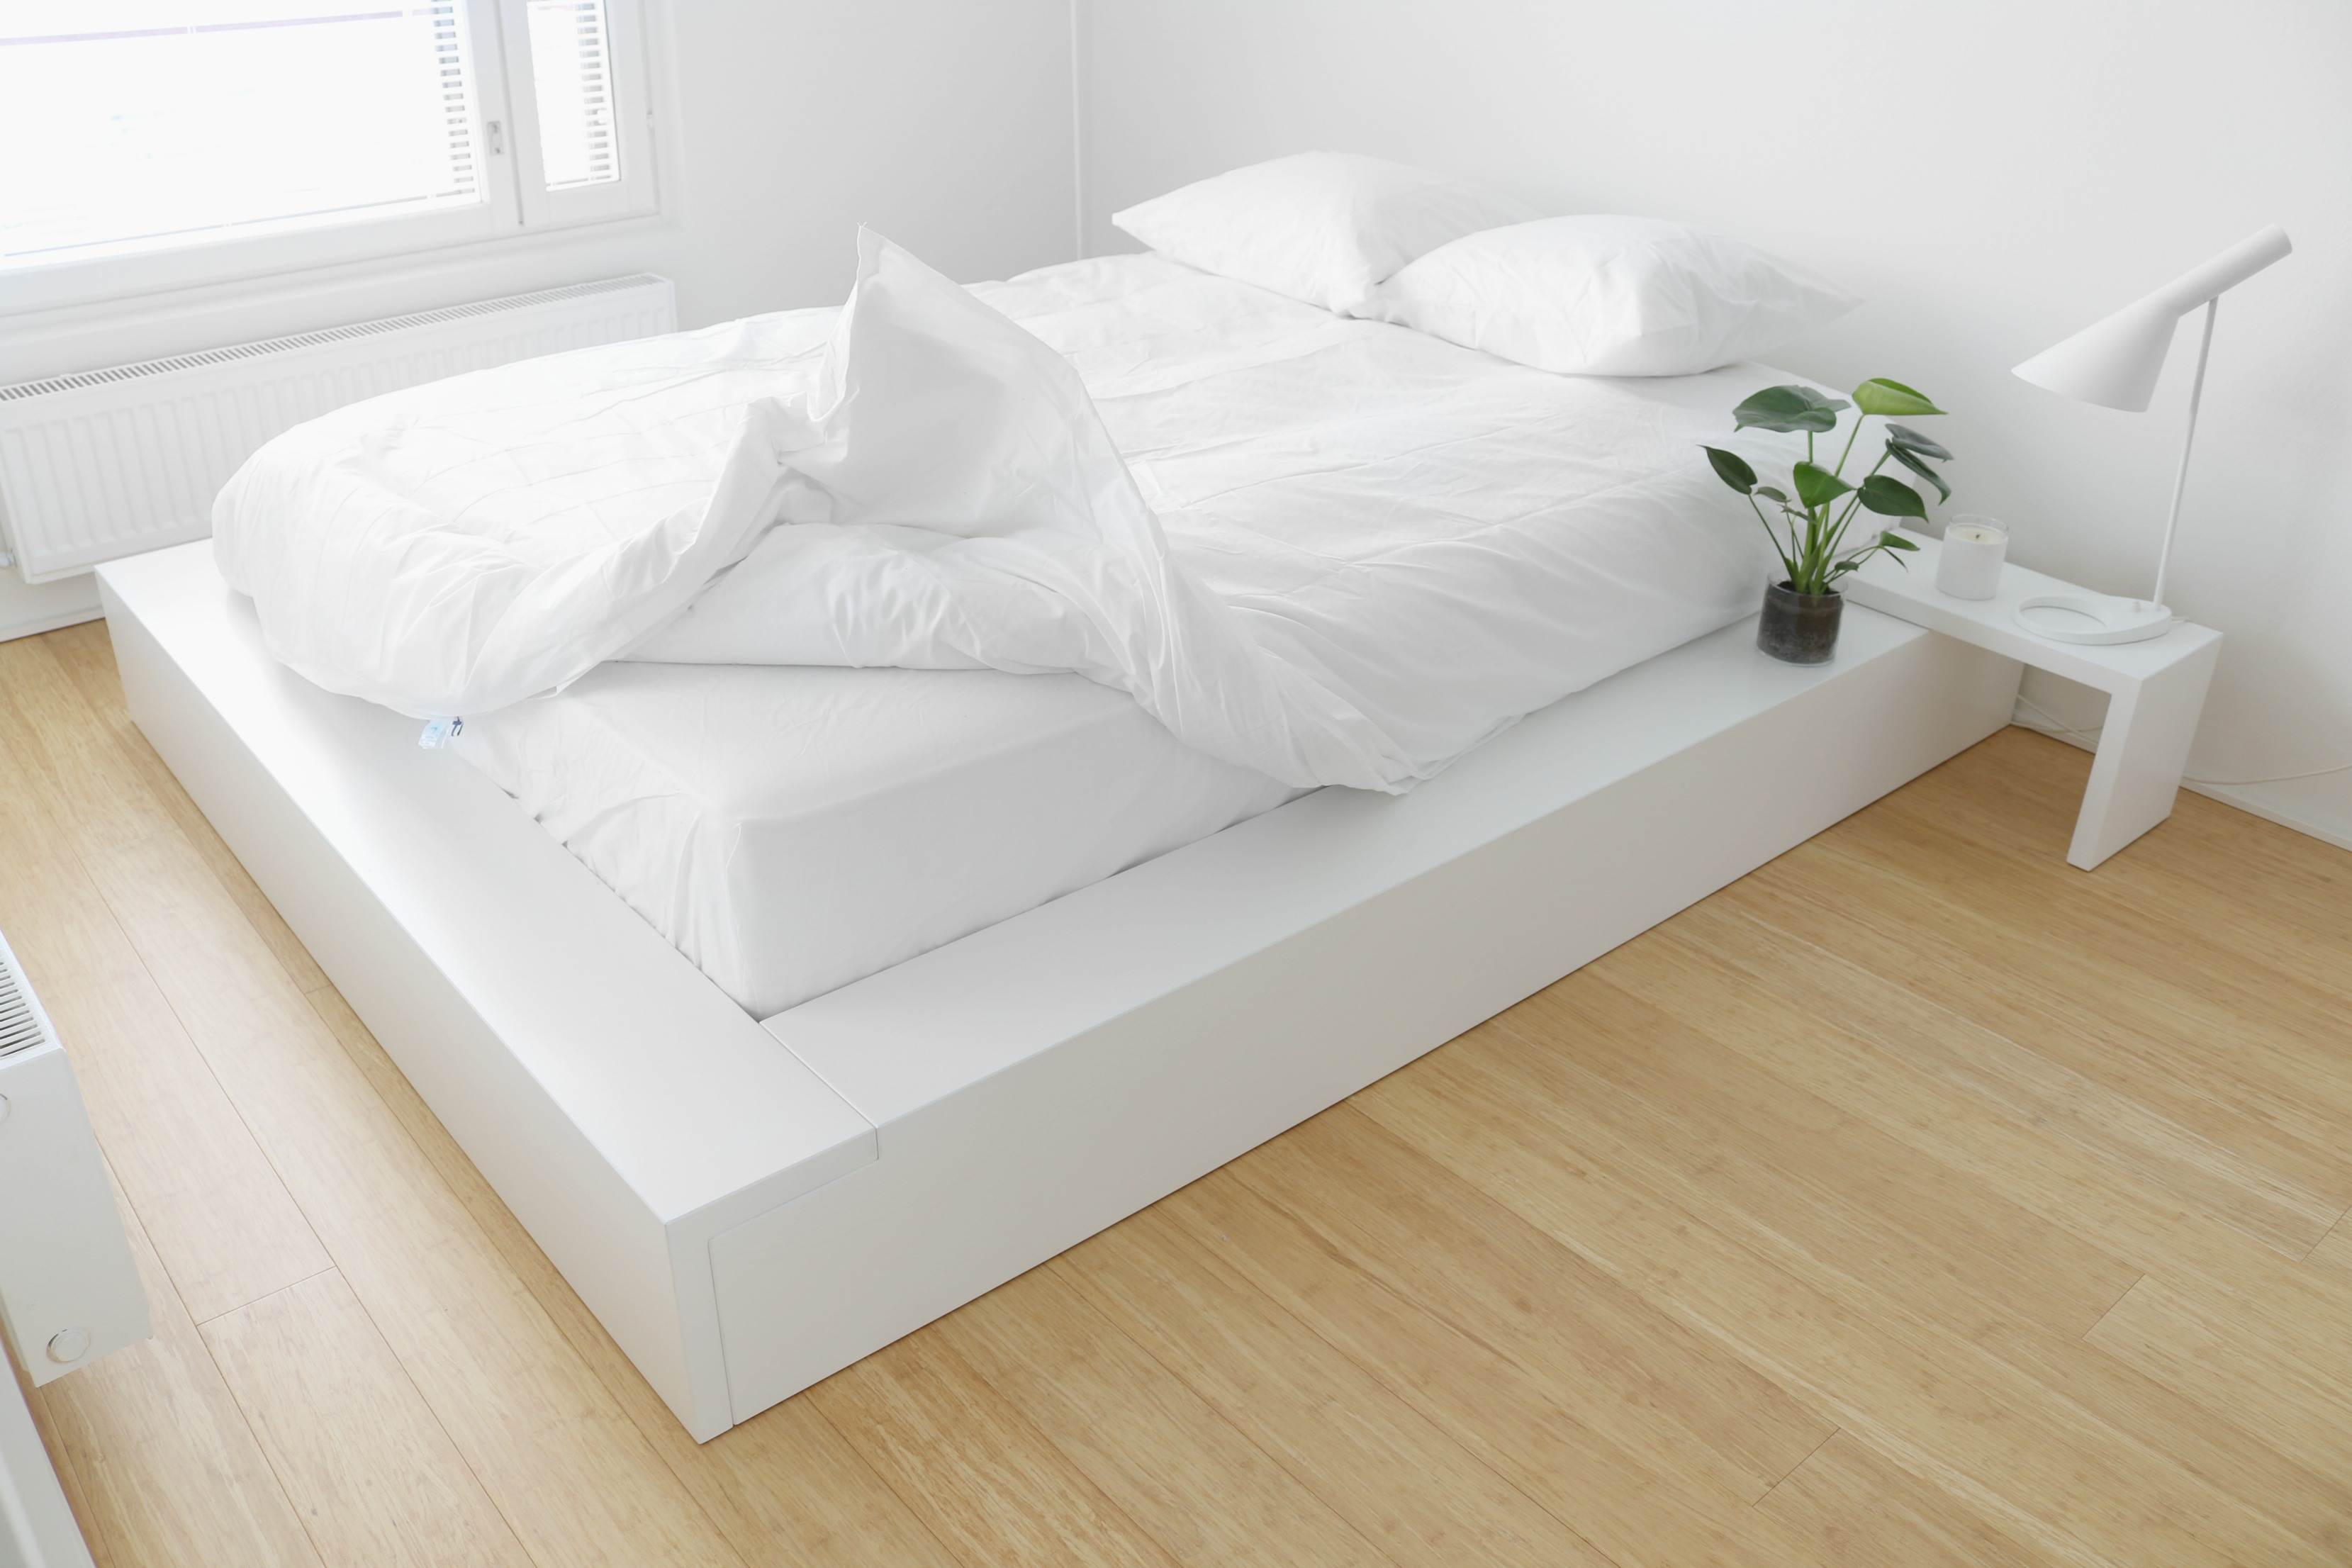 Nukkuville mittatilaussänky kokemuksia - Japanilaistyylinen futon-sänky minimalistinen sisustus - Omakotivalkoinen